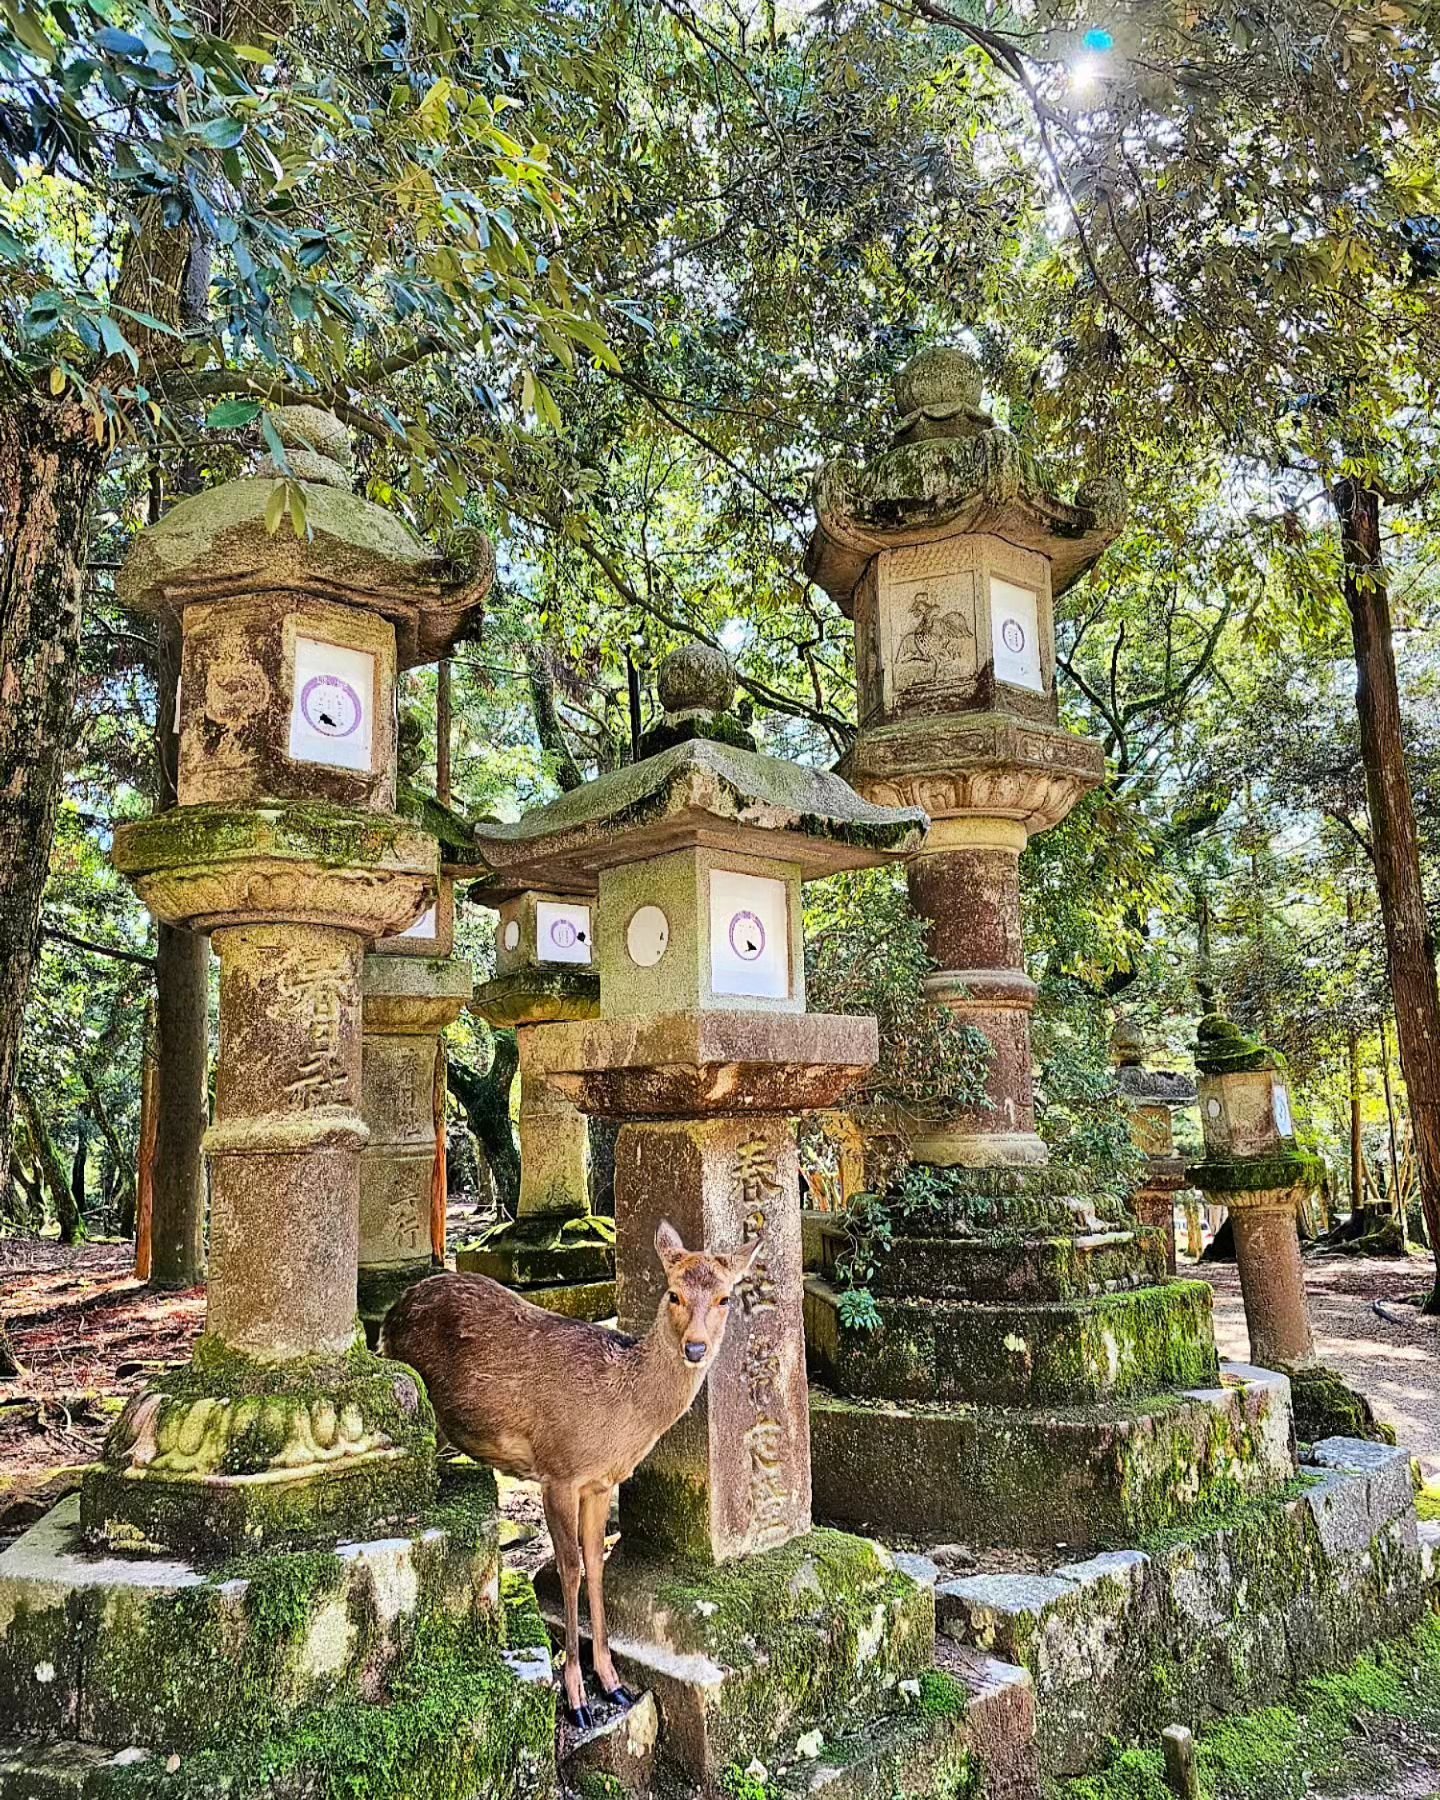 Magical Nara ✨️🇯🇵

#nara #naradeer #narapark #japan #narajapan #anywherewithabbey